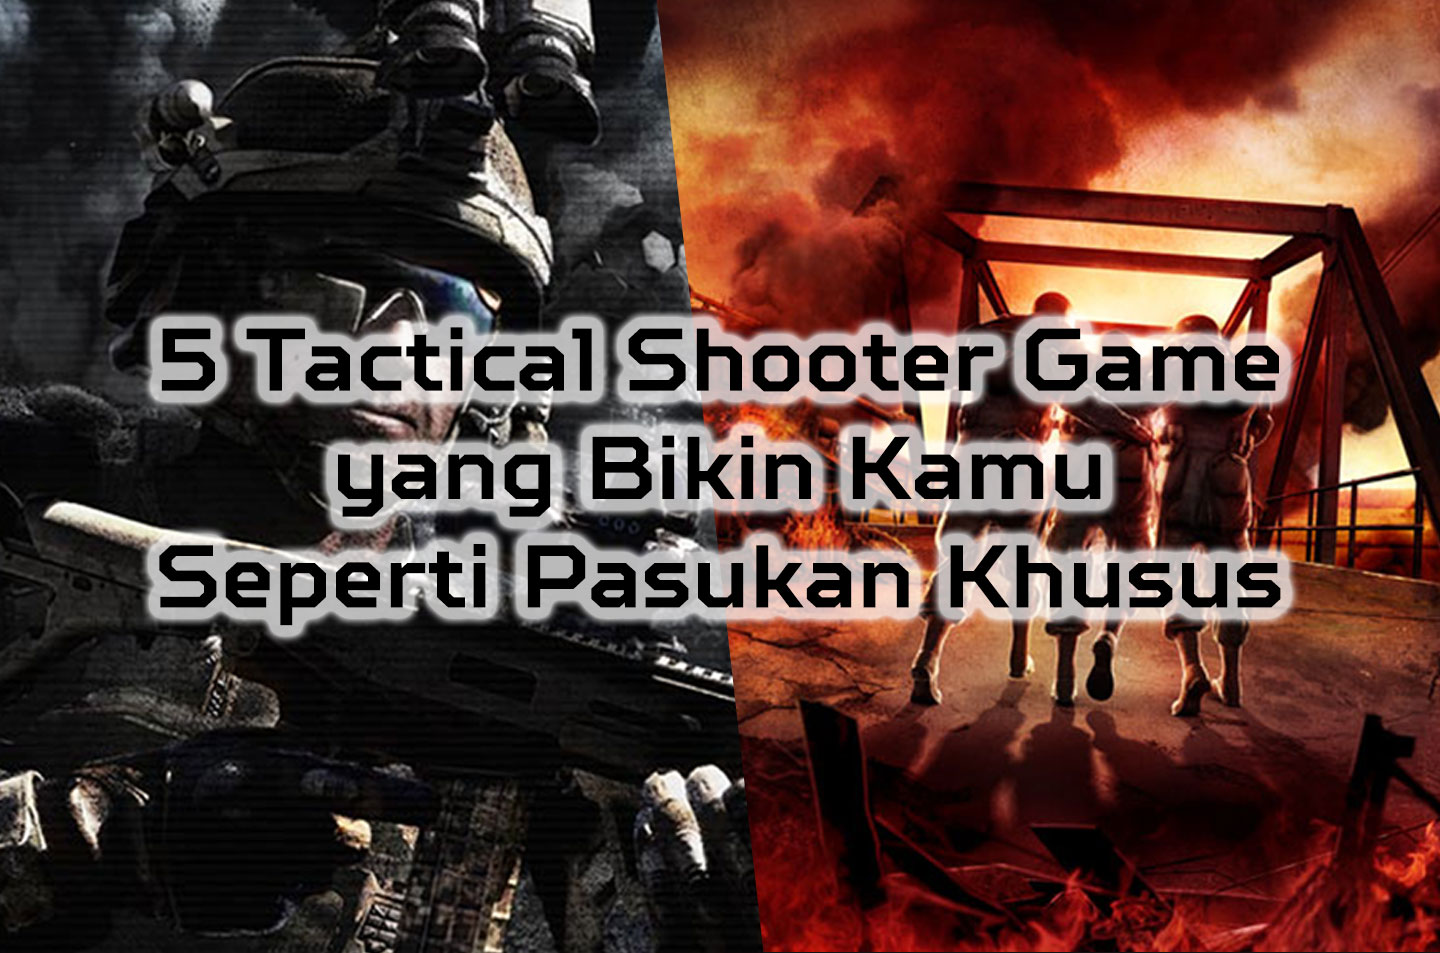 5 Tactical Shooter Game Yang Bikin Kamu Seperti Pasukan Khusus